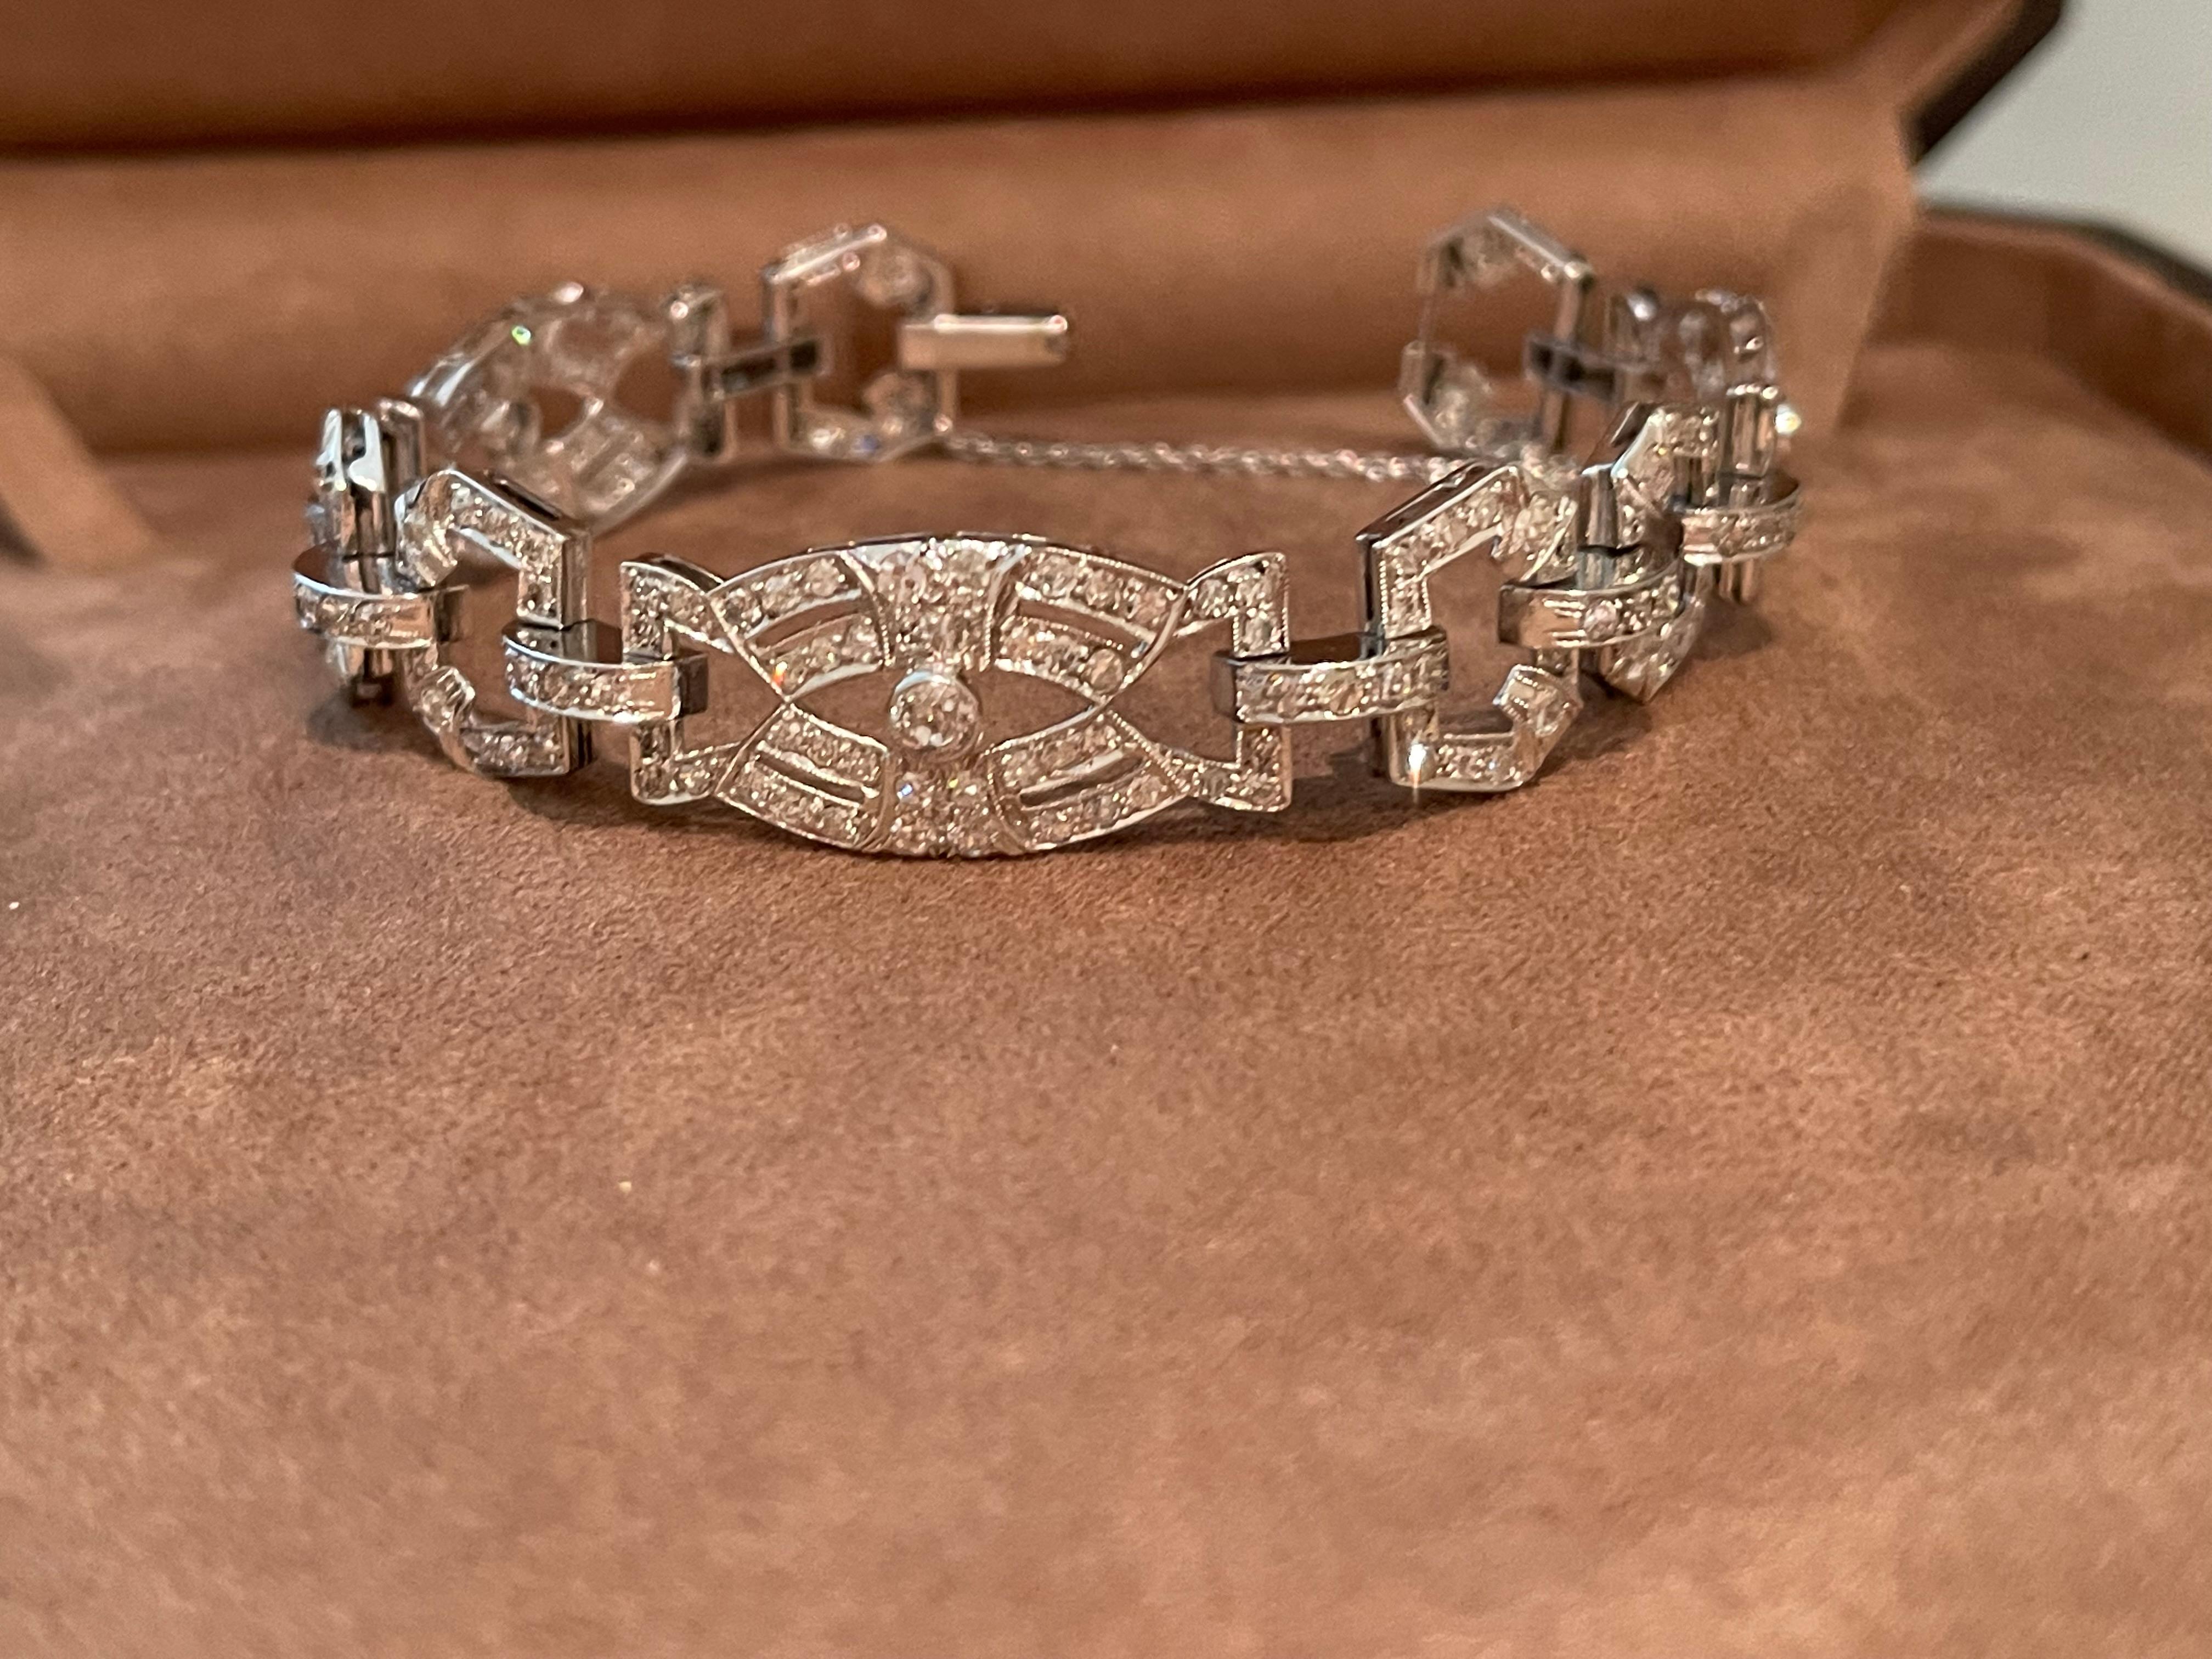 Un magnifique bracelet Art Déco en diamants serti en platine. 
Cette pièce est un parfait exemple de l'artisanat et de l'élégance de l'Art Déco ! Le bracelet est conçu comme un panneau ajouré avec des maillons de plaque sertis de diamants. Les liens